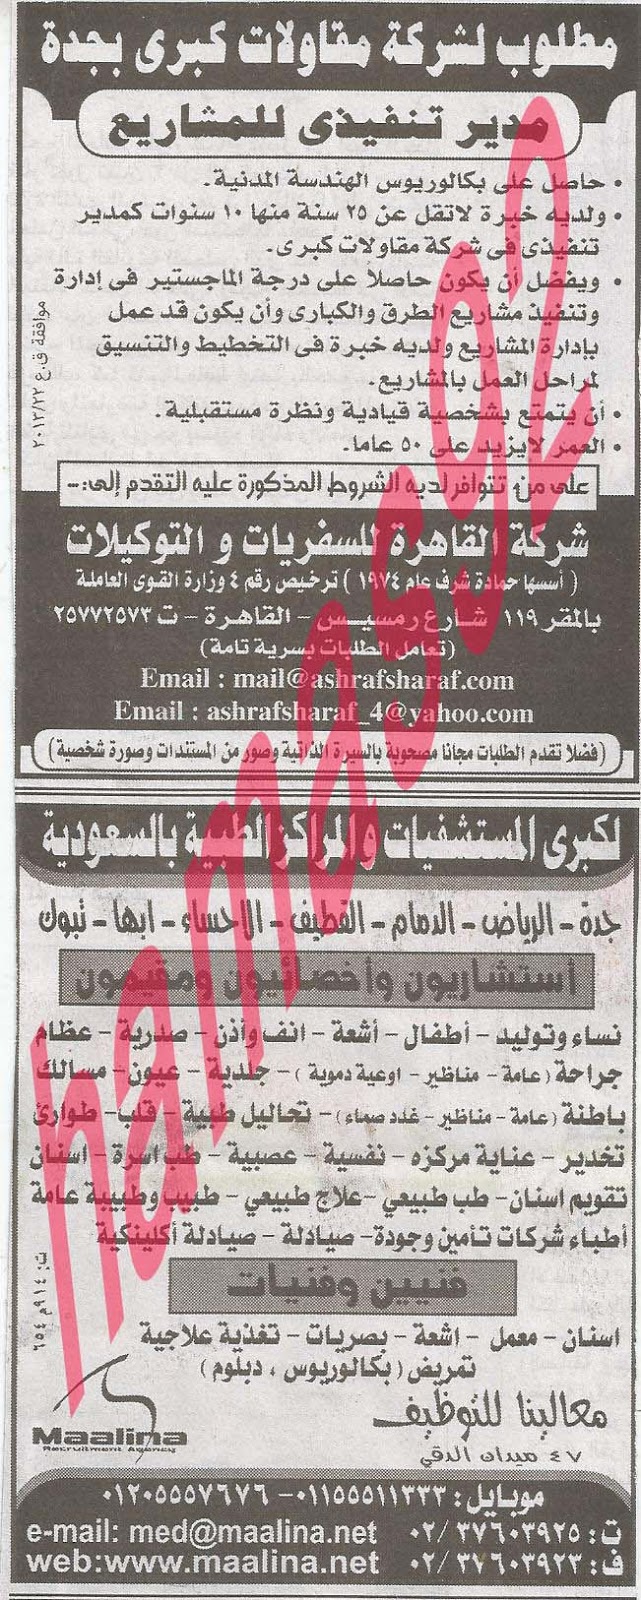 وظائف خالية فى دول الخليج بجريدة الاهرام الجمعة 23-08-2013 19